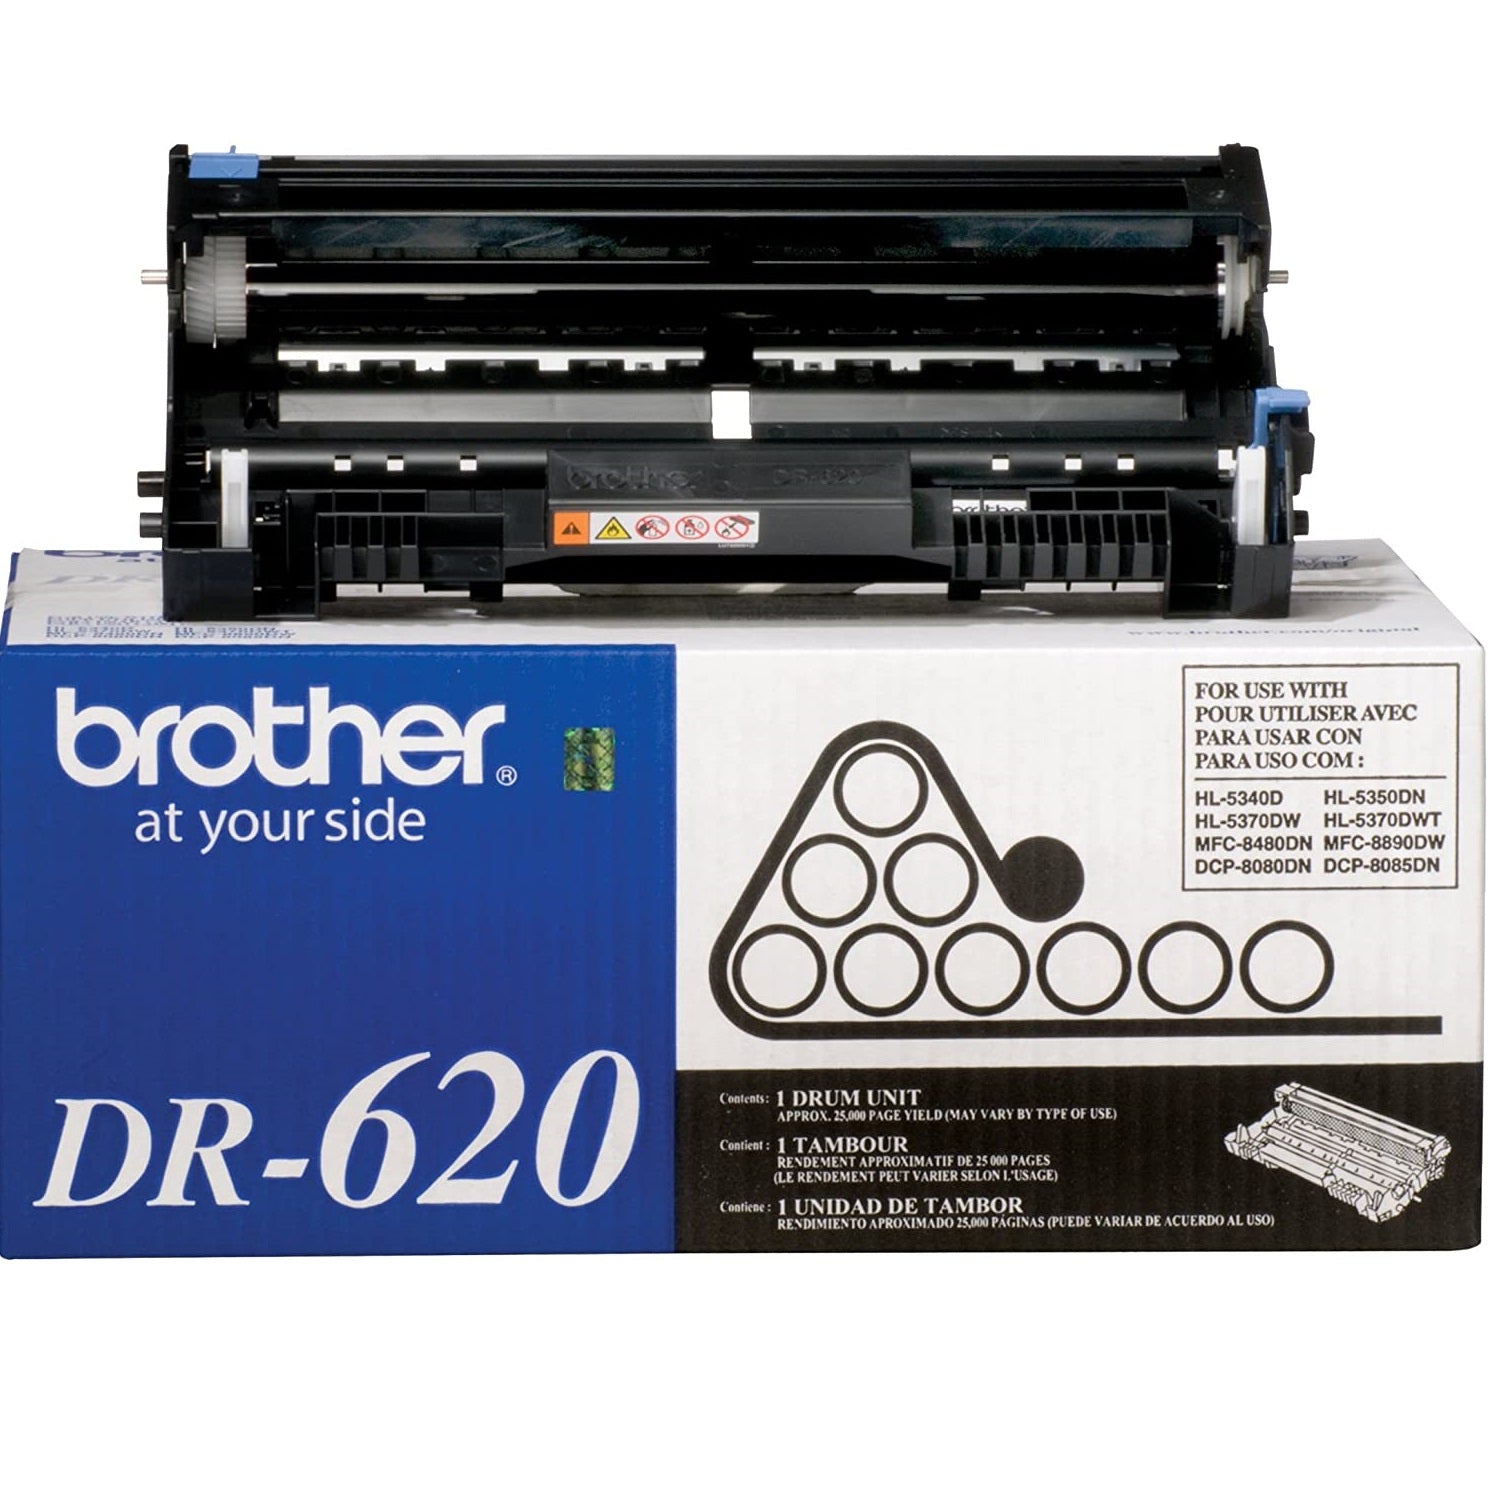 Absolute Toner Brother Genuine OEM DR-620 Printer Drum Unit, DR620 | Works for DCP-8080DN, DCP-8085DN, HL-5340D, HL-5350DN Original Brother Cartridges